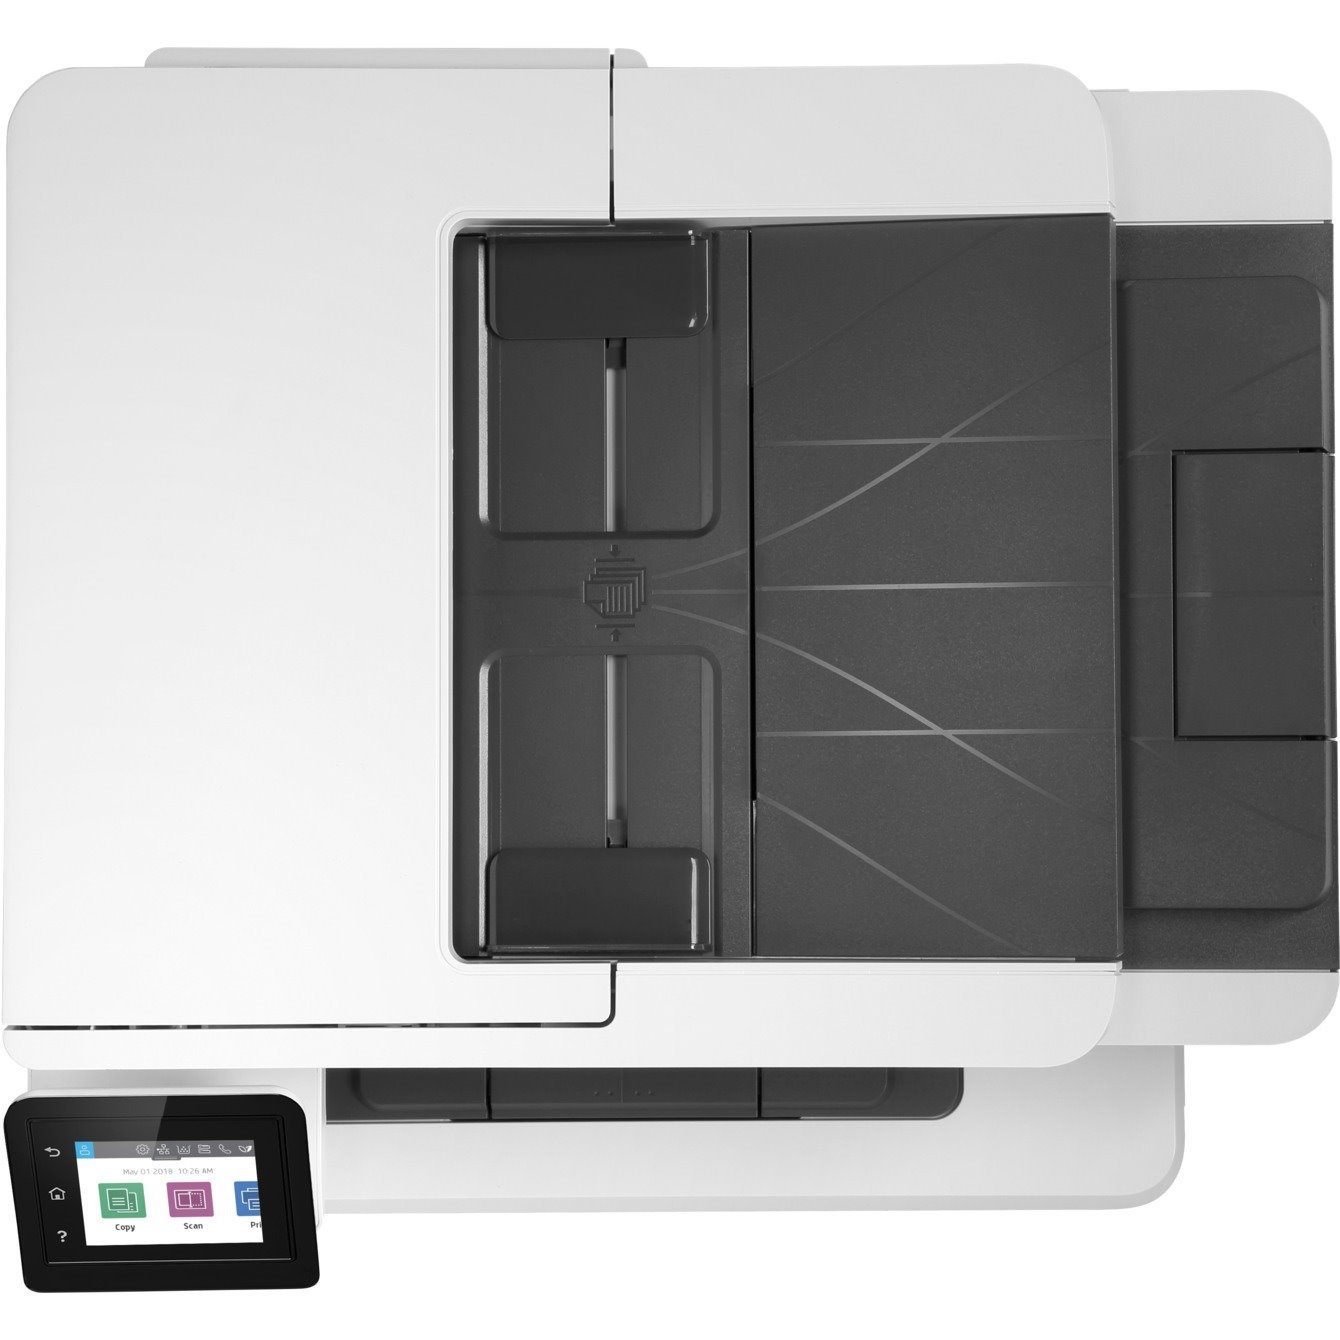 HP LaserJet Pro M428fdn Laser Multifunction Printer - Monochrome